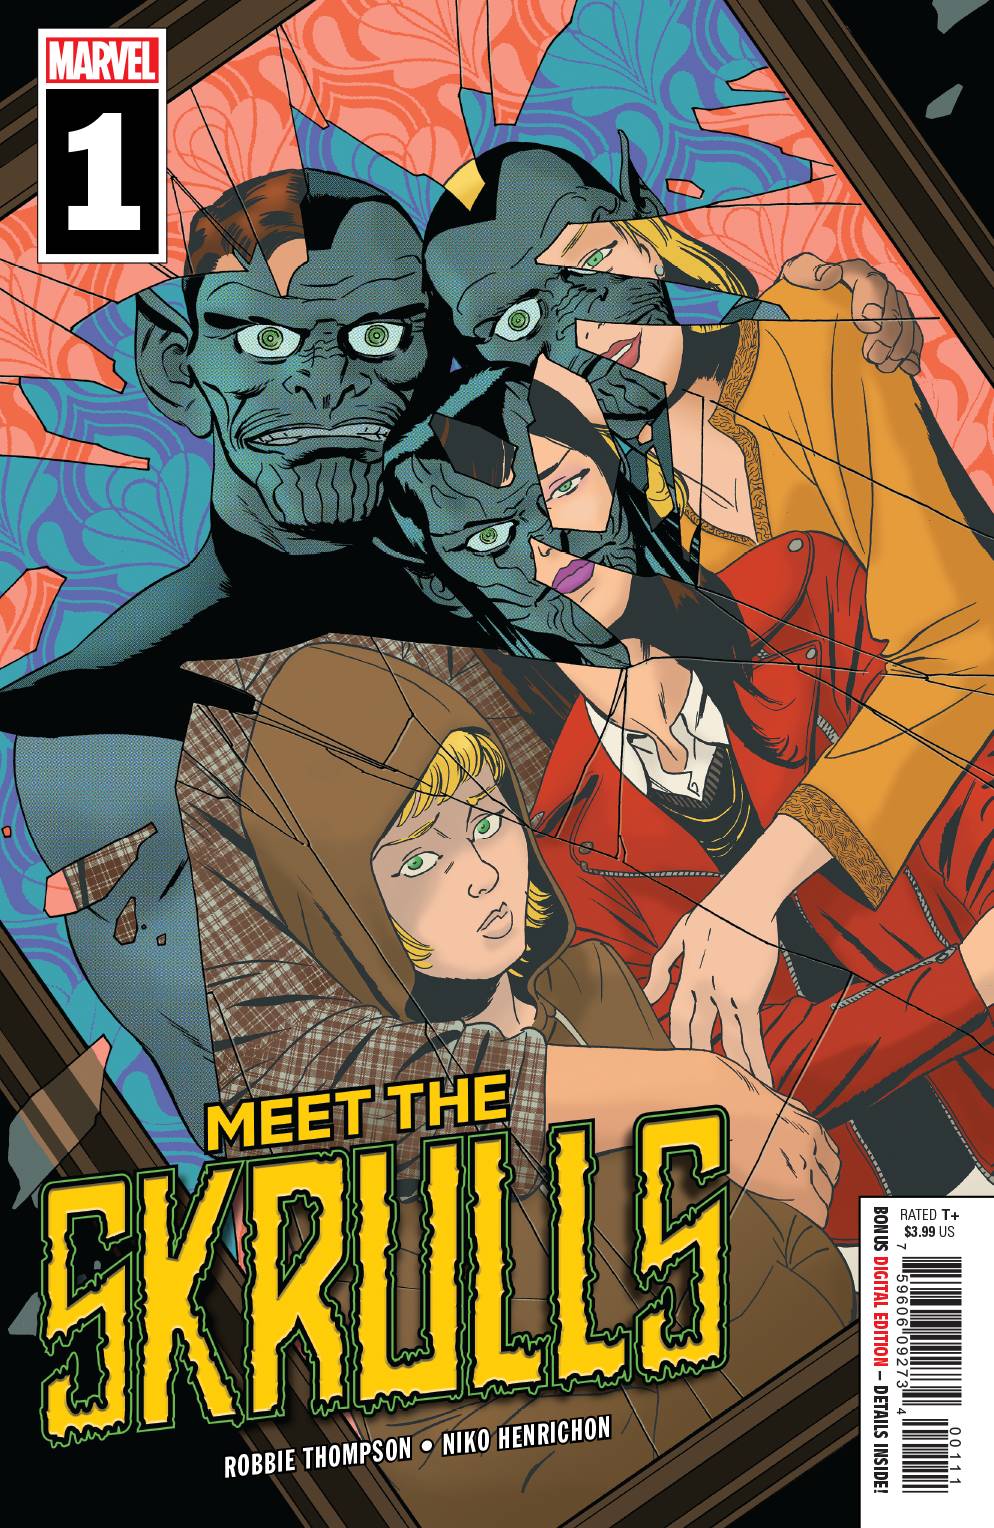 Meet The Skrulls #1 (Of 5)